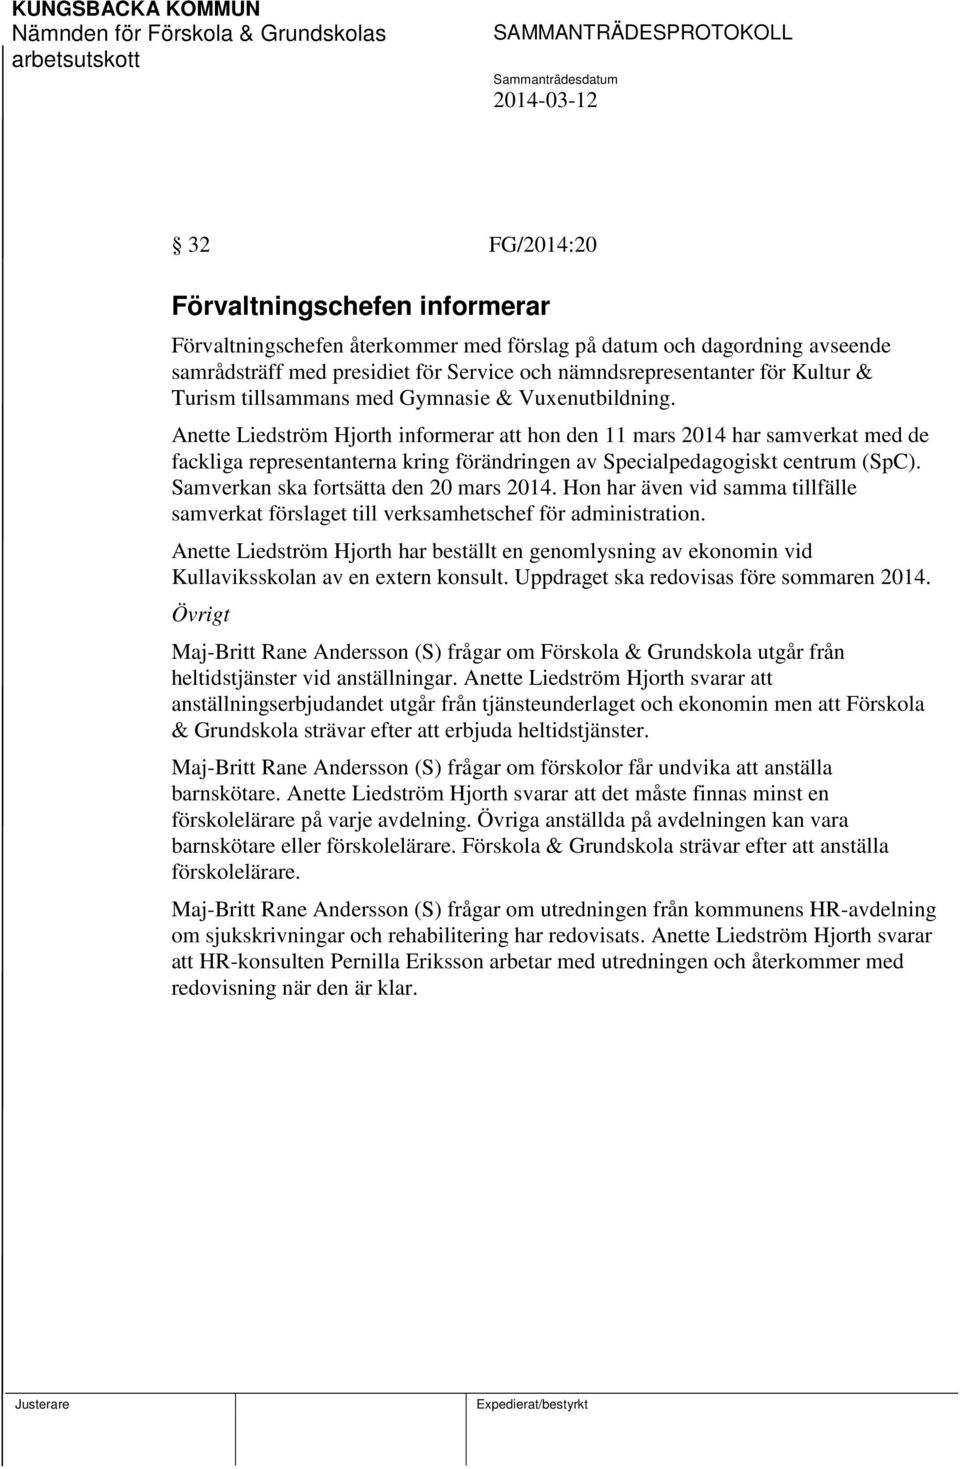 Anette Liedström Hjorth informerar att hon den 11 mars 2014 har samverkat med de fackliga representanterna kring förändringen av Specialpedagogiskt centrum (SpC).